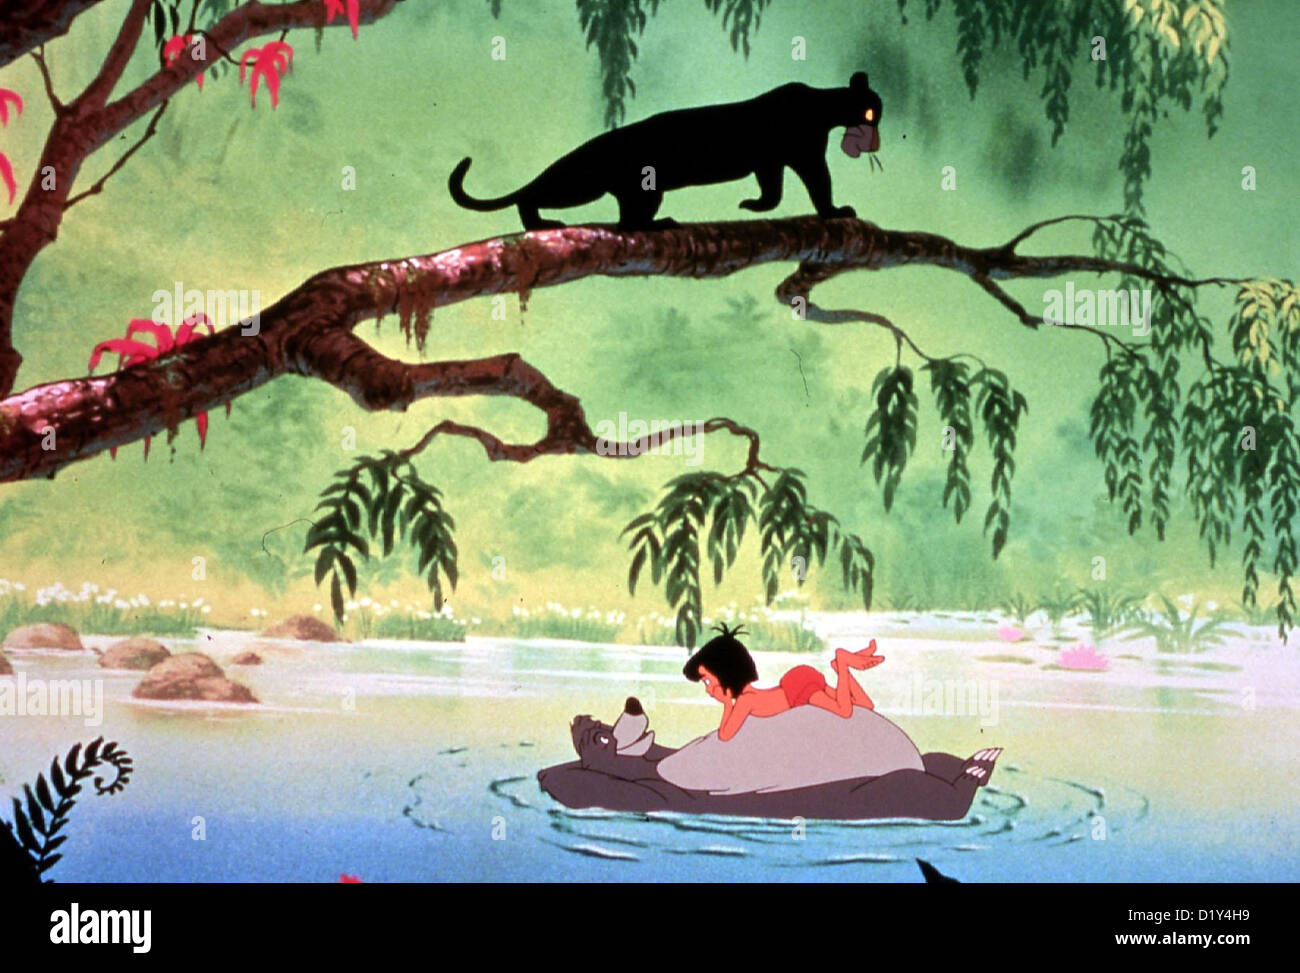 Das Dschungelbuch  Jungle Book,  Mowgli spielt mit Baloo und auf dem Ast lauert der schwarze Panther Baghira *** Local Caption Stock Photo